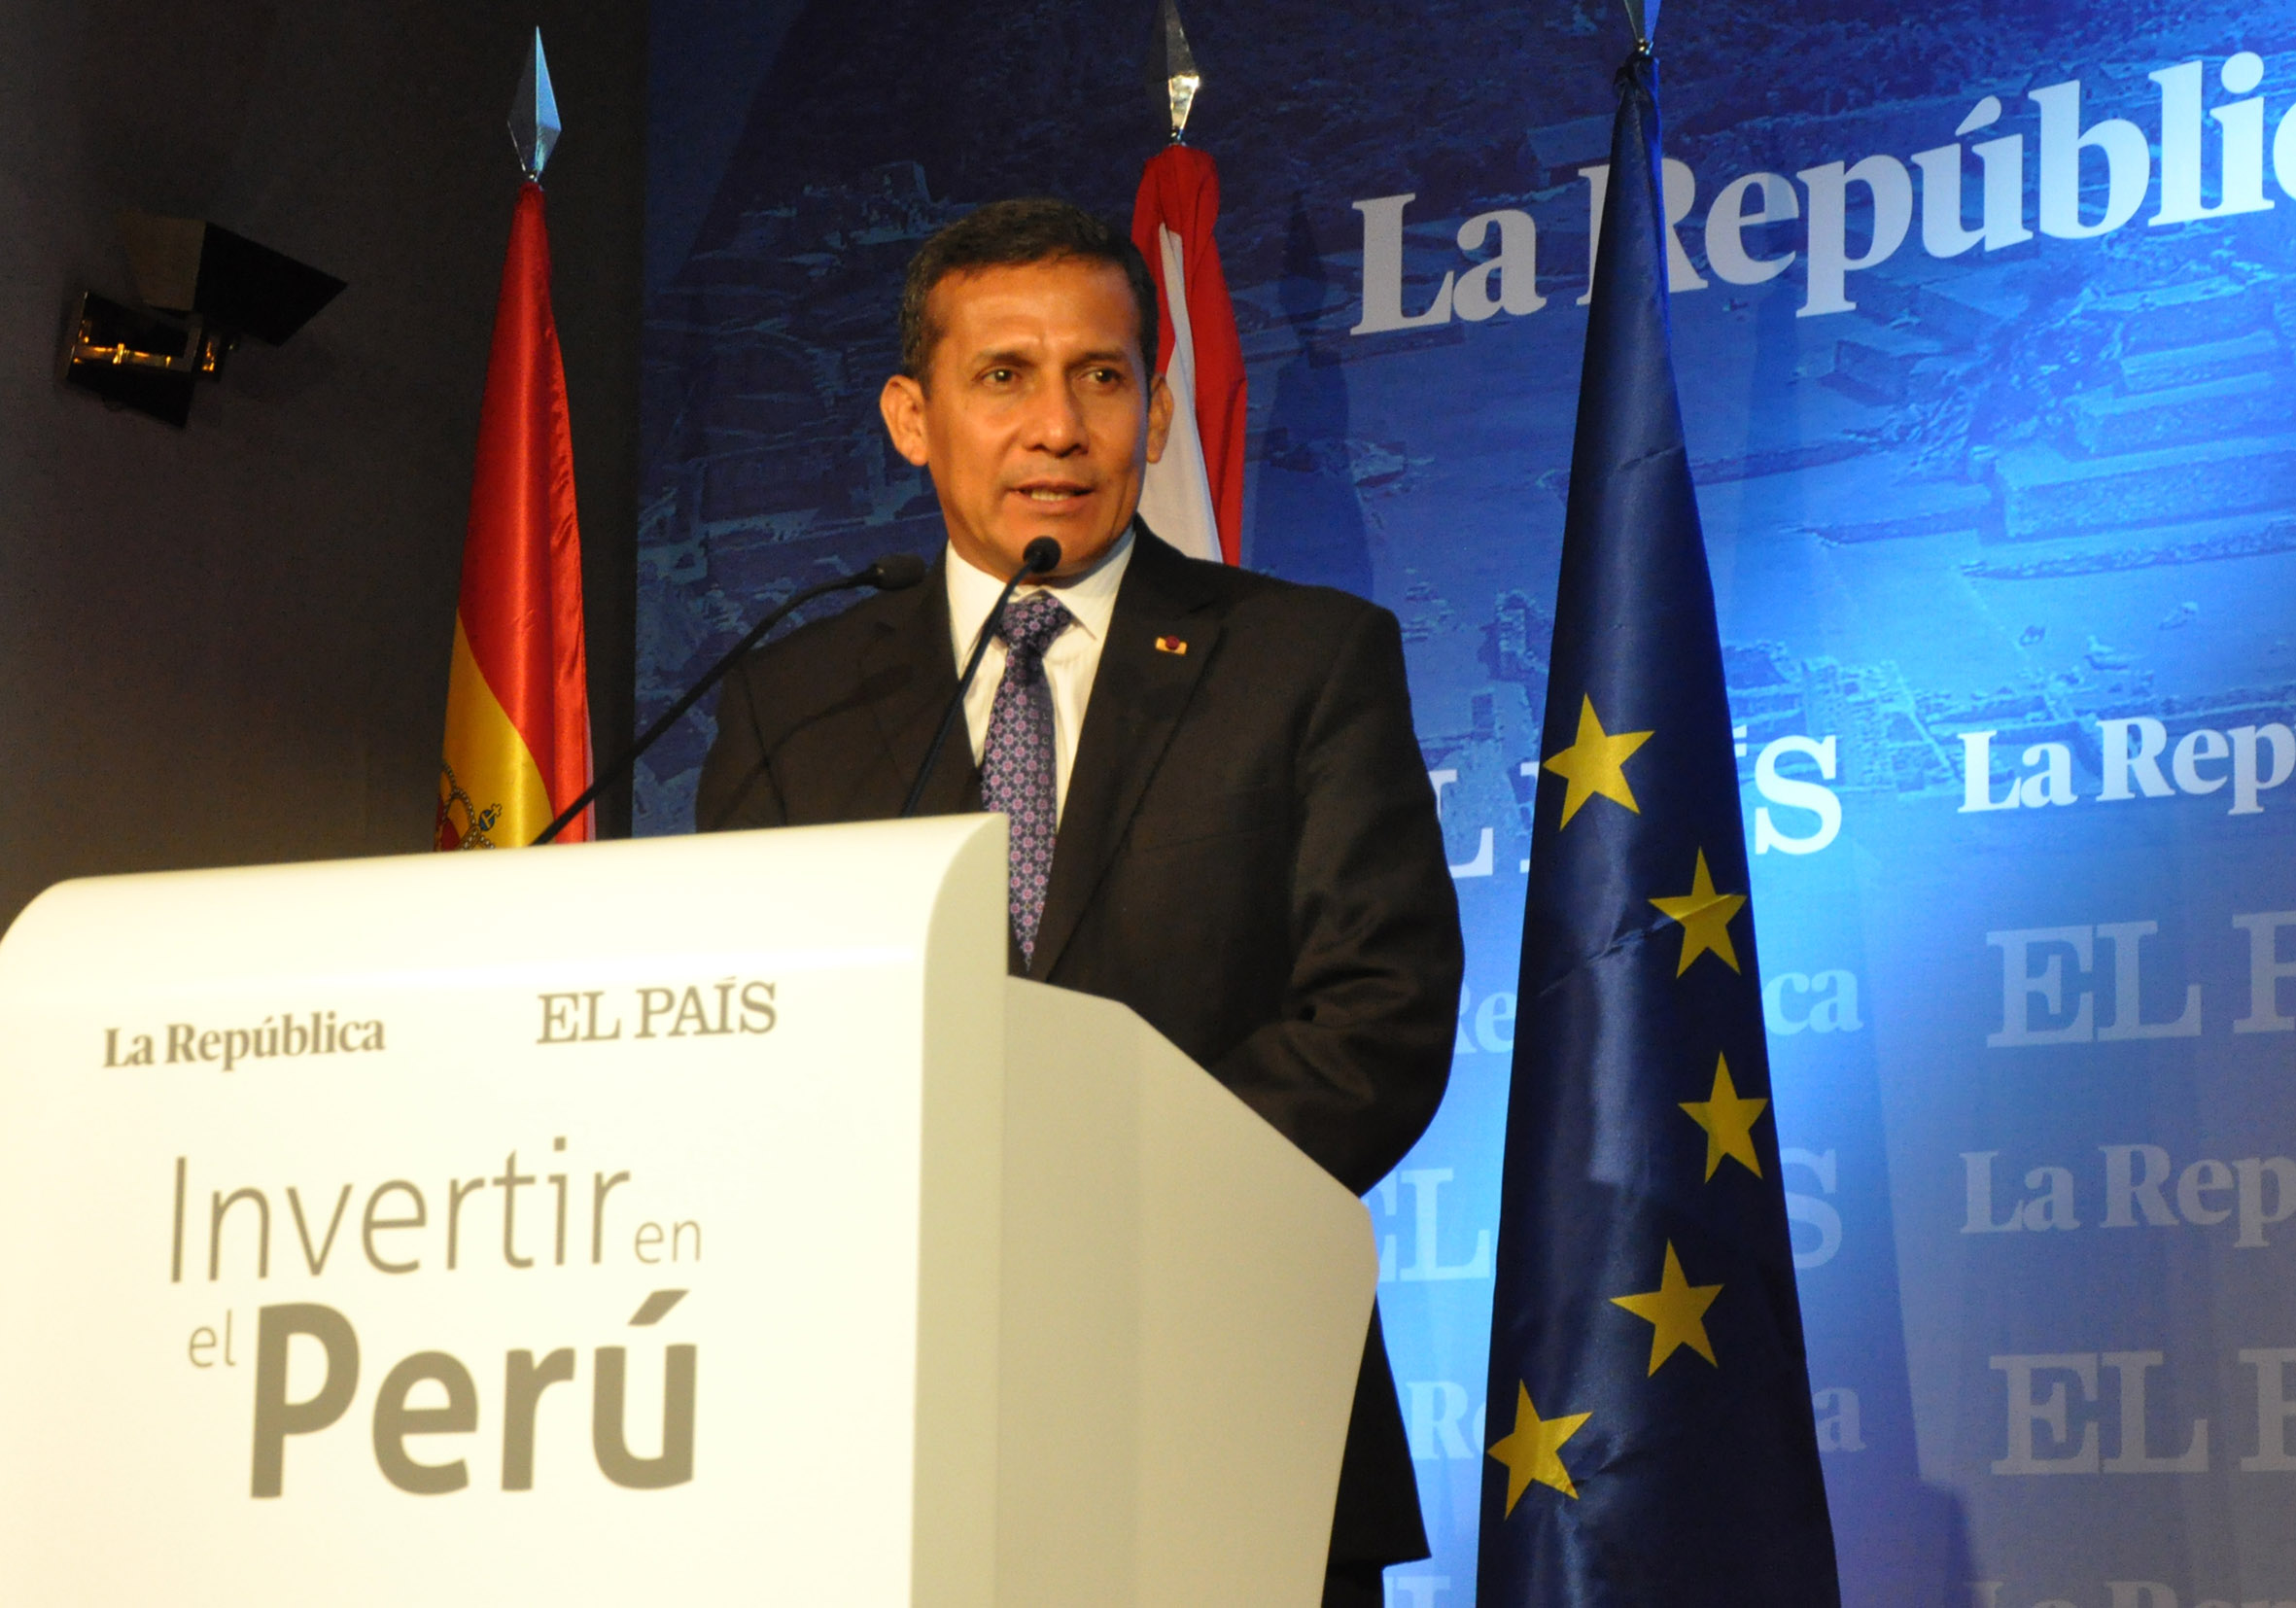 Presidente Ollanta Humala participó en inauguración   de evento empresarial "Invertir en el Perú"